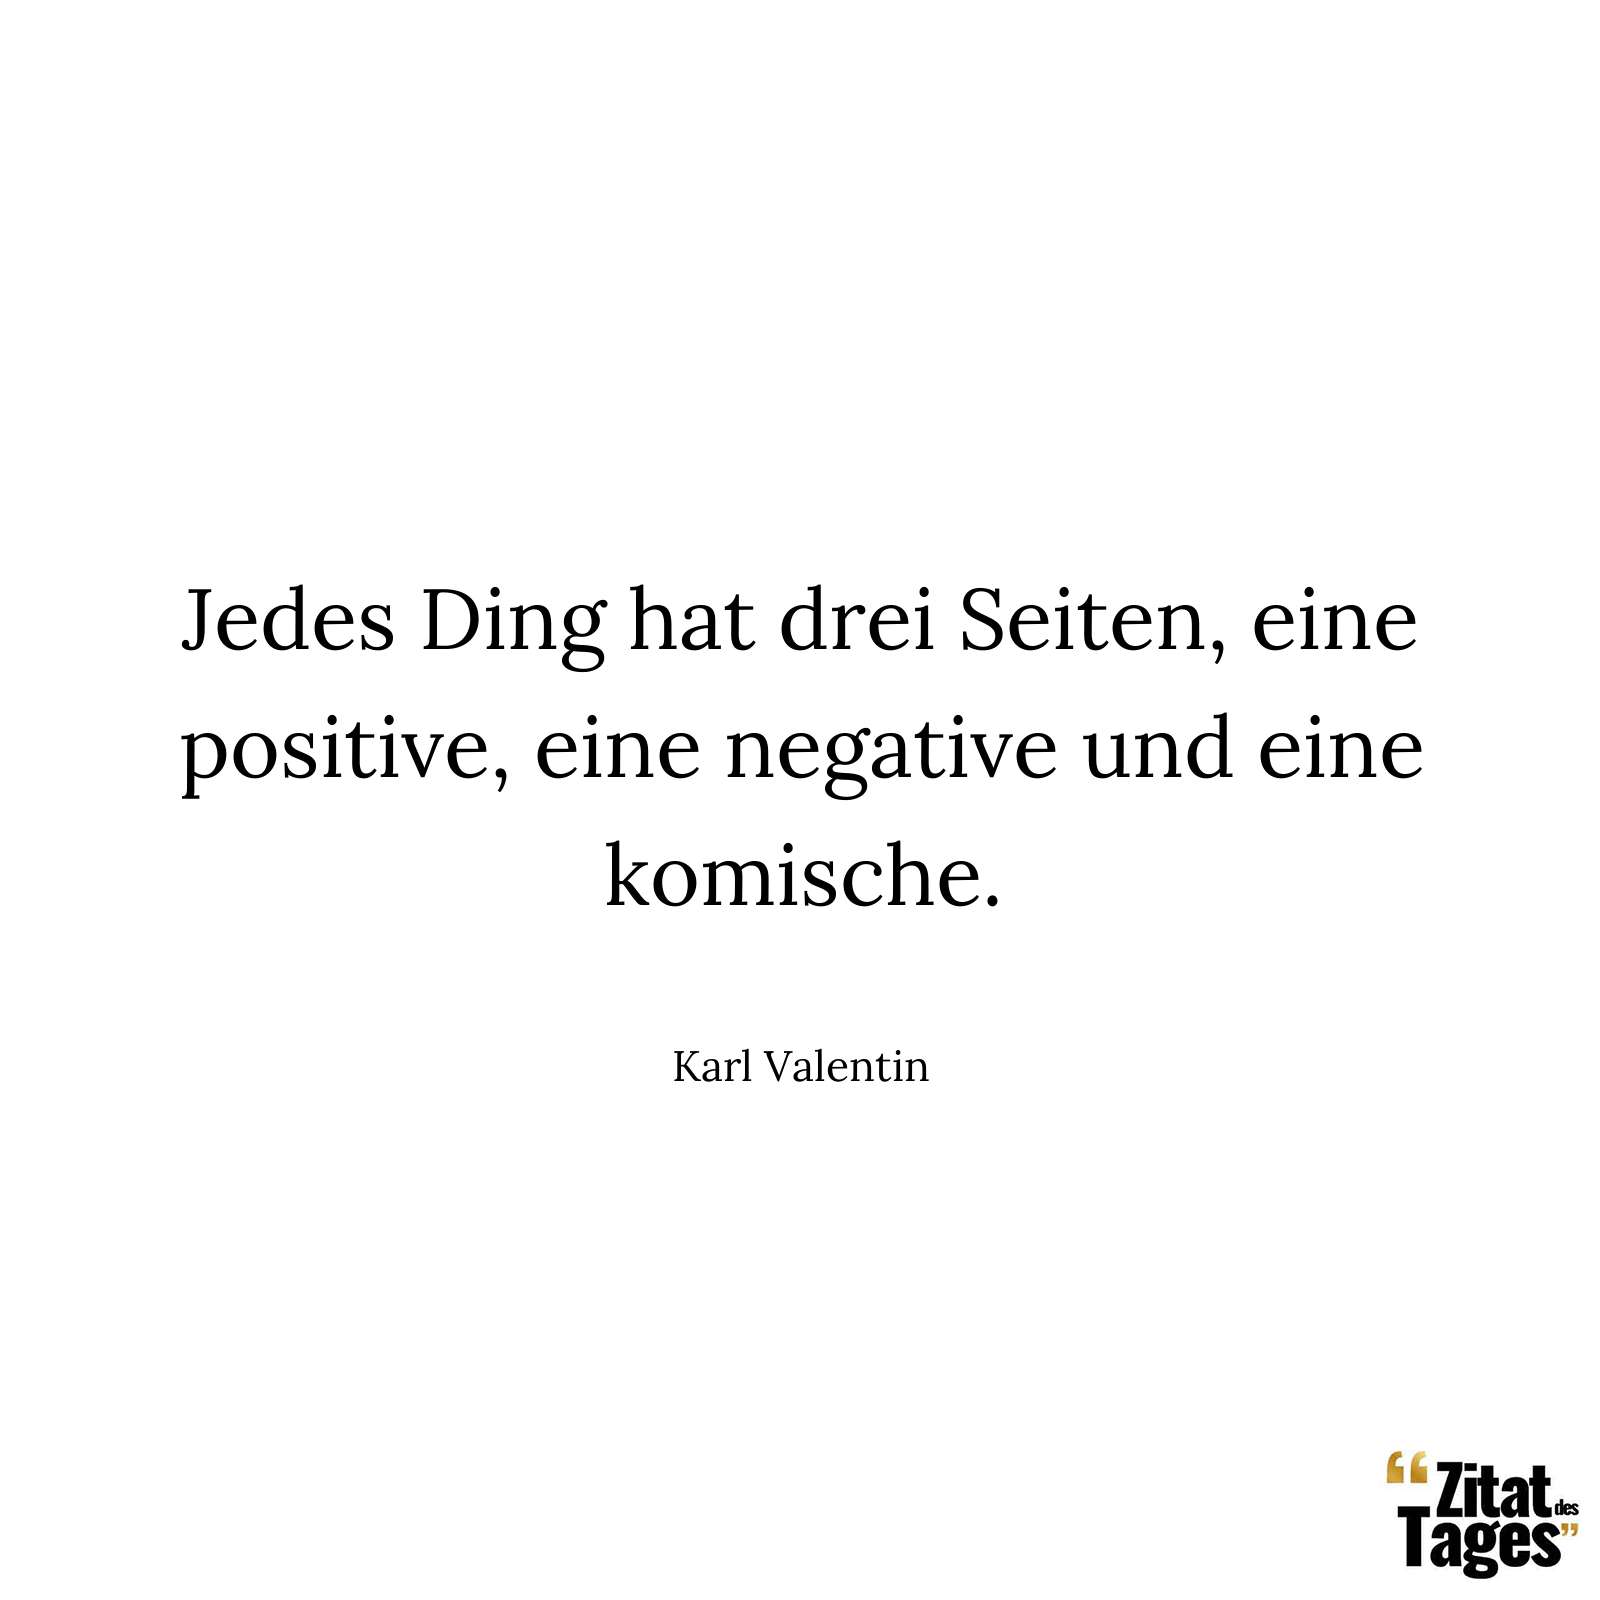 Jedes Ding hat drei Seiten, eine positive, eine negative und eine komische. - Karl Valentin